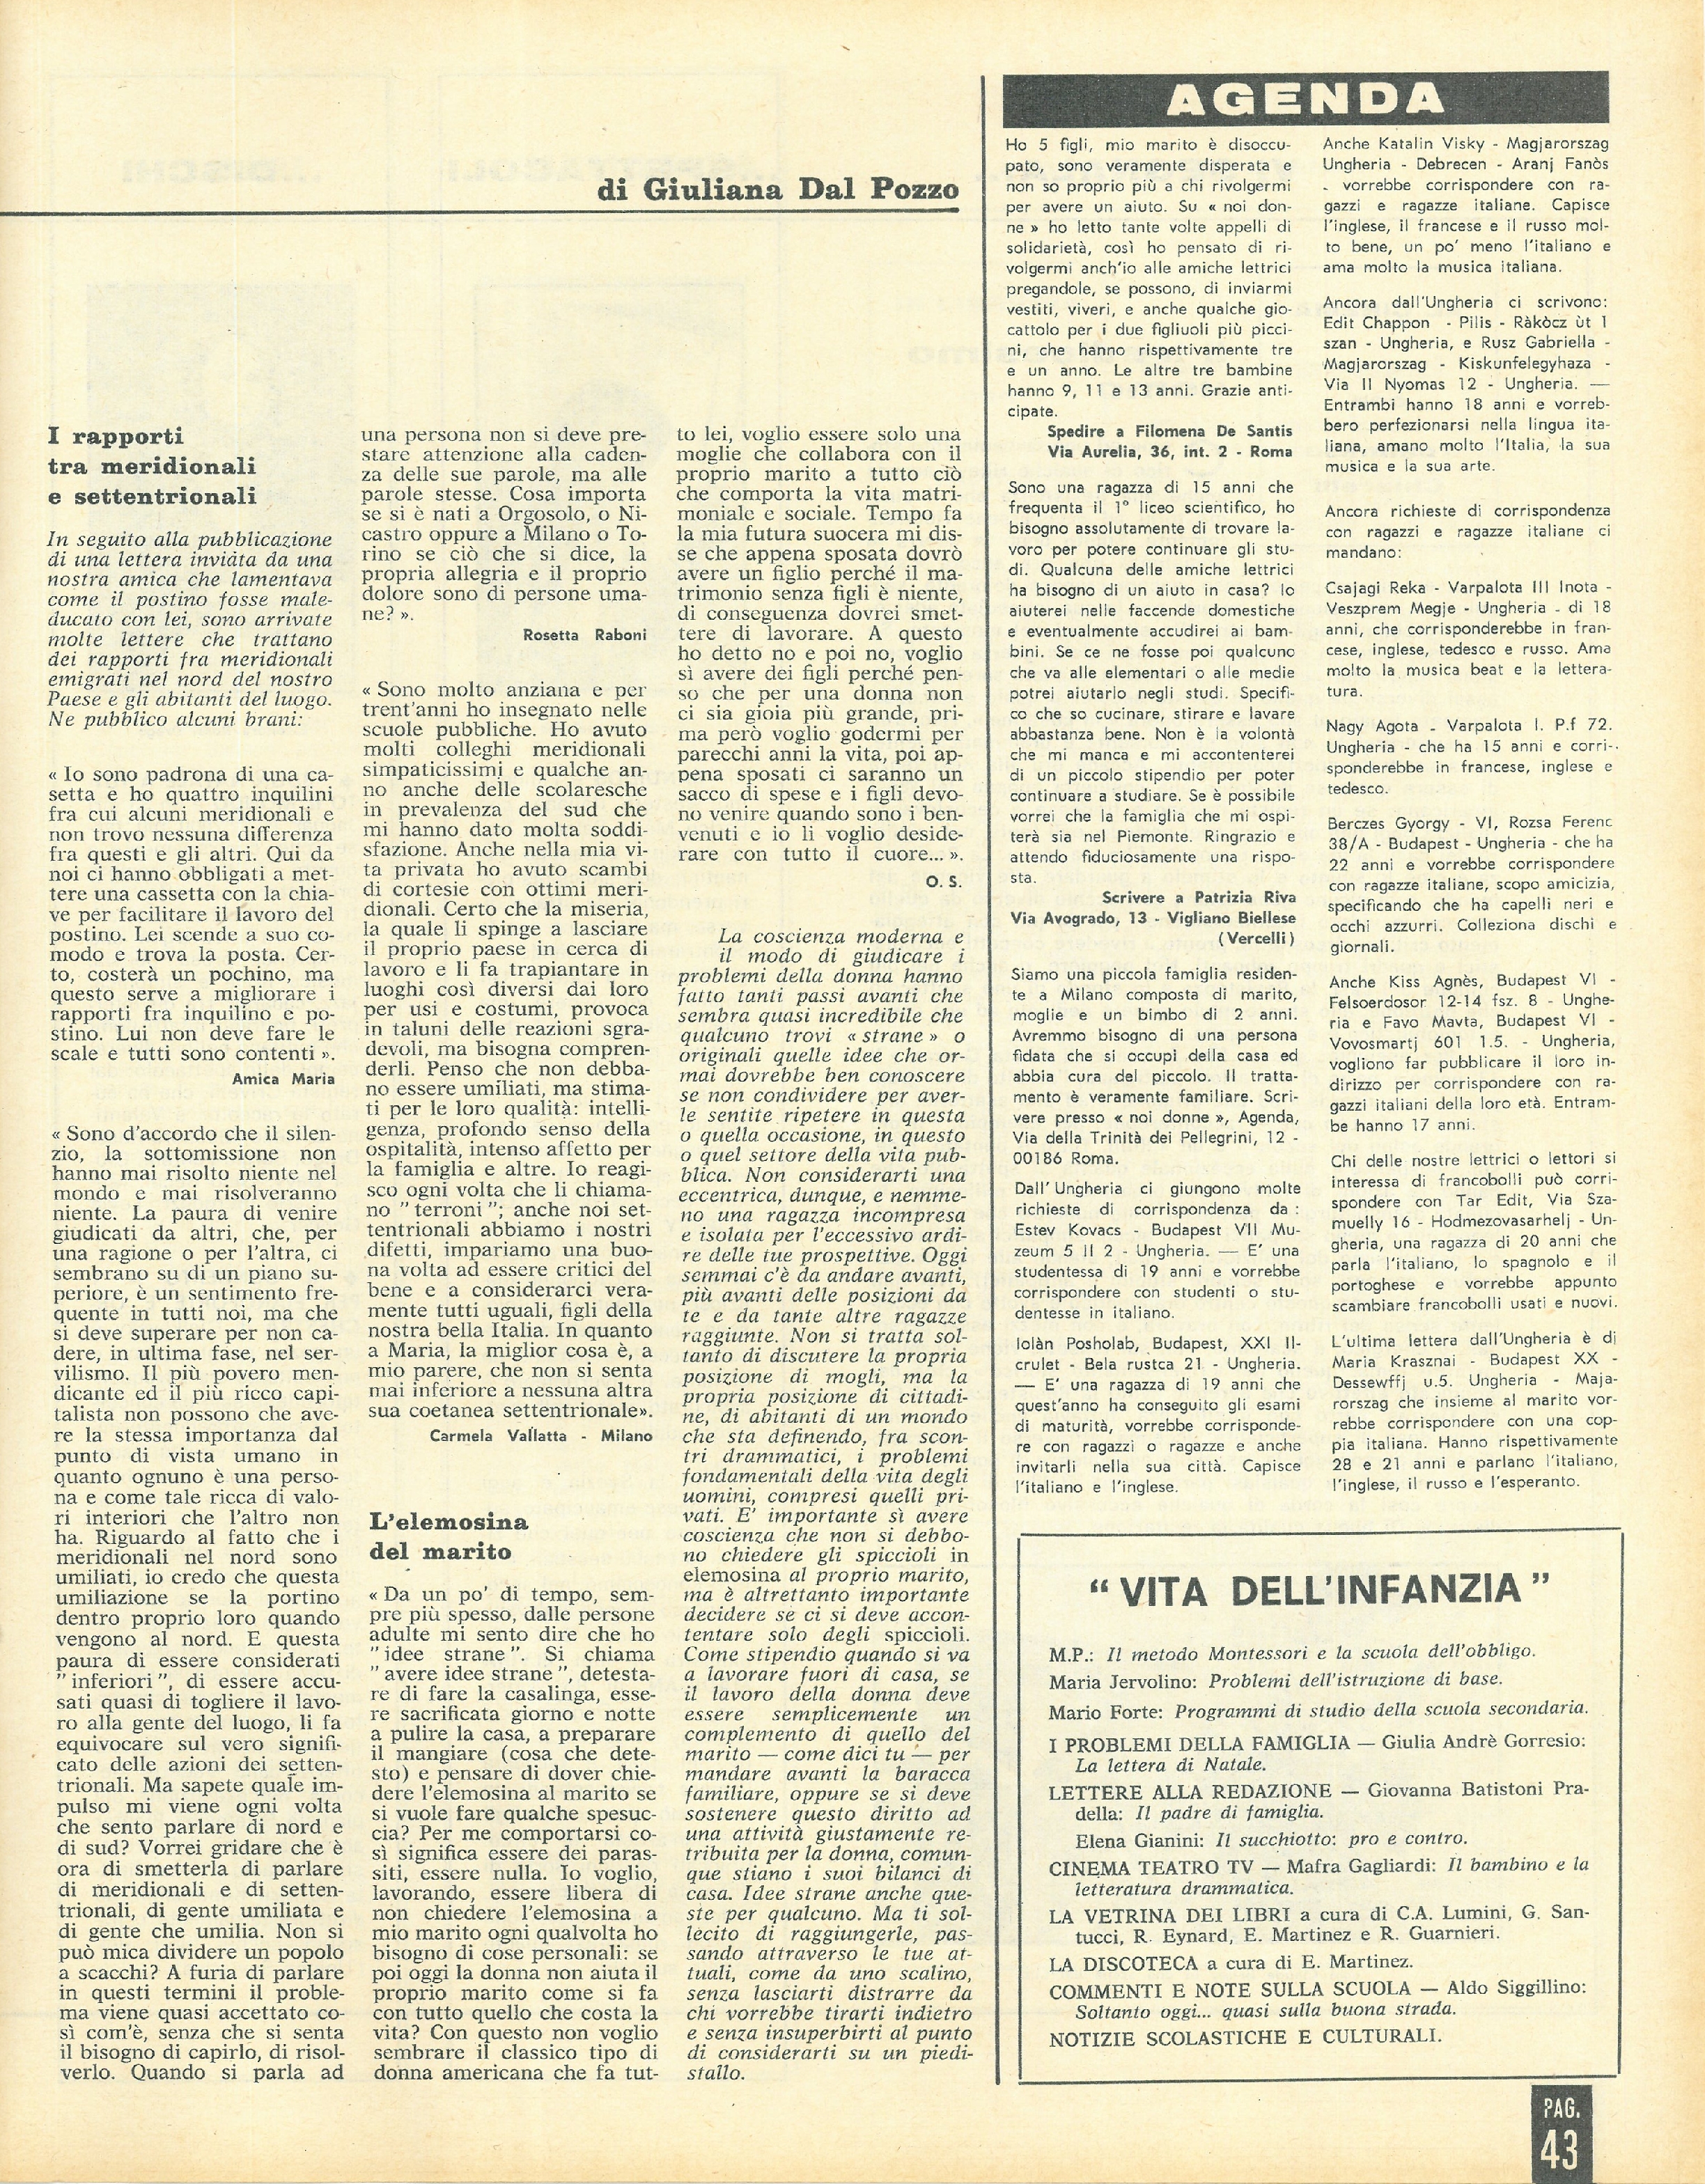 Foto: Come vorremmo il 1968 ,oroscopo semiserio per l'anno nuovo. In copertina Monica Vitti, interprete straordinario del film La ragazza con la pistola  